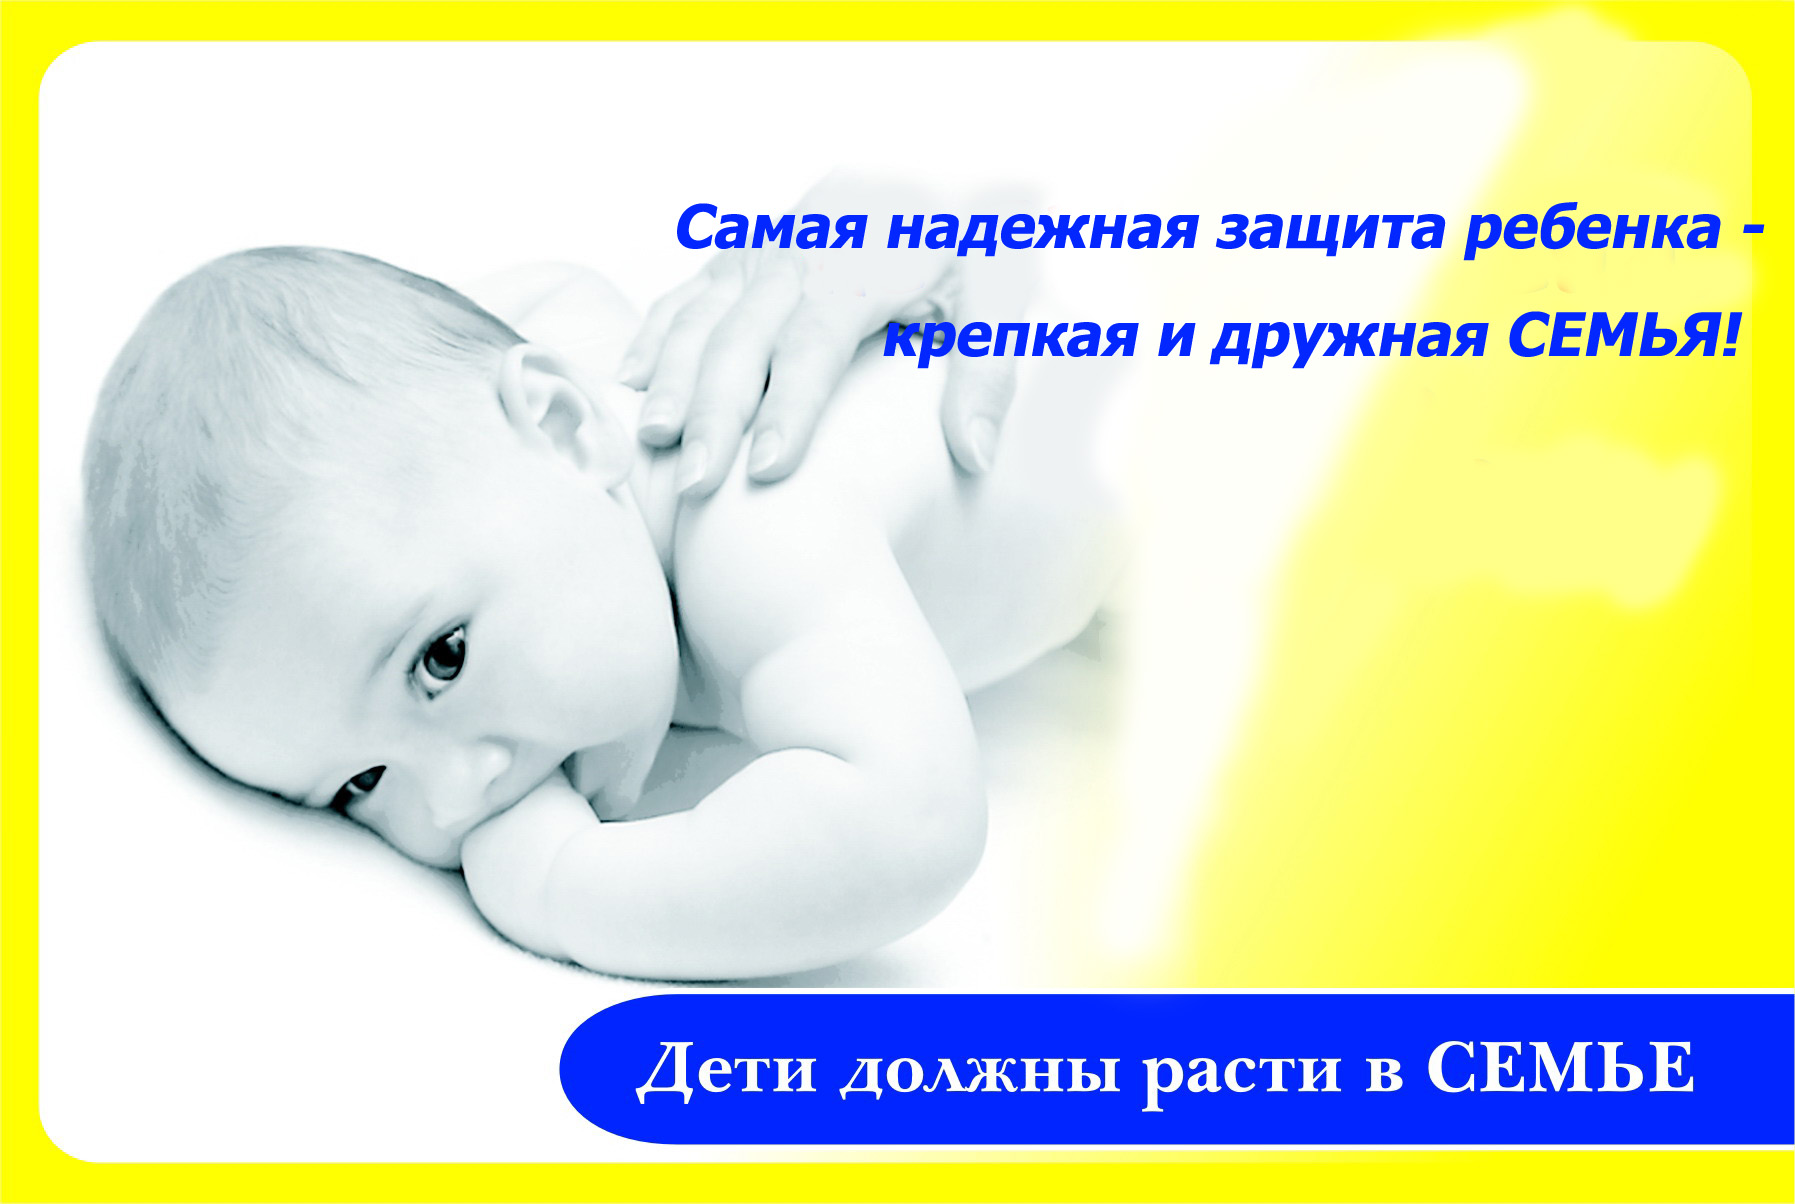 Накануне Международного дня семьи в Московском районе города Чебоксары еще 2 сирот были переданы на воспитание в семью опекуна